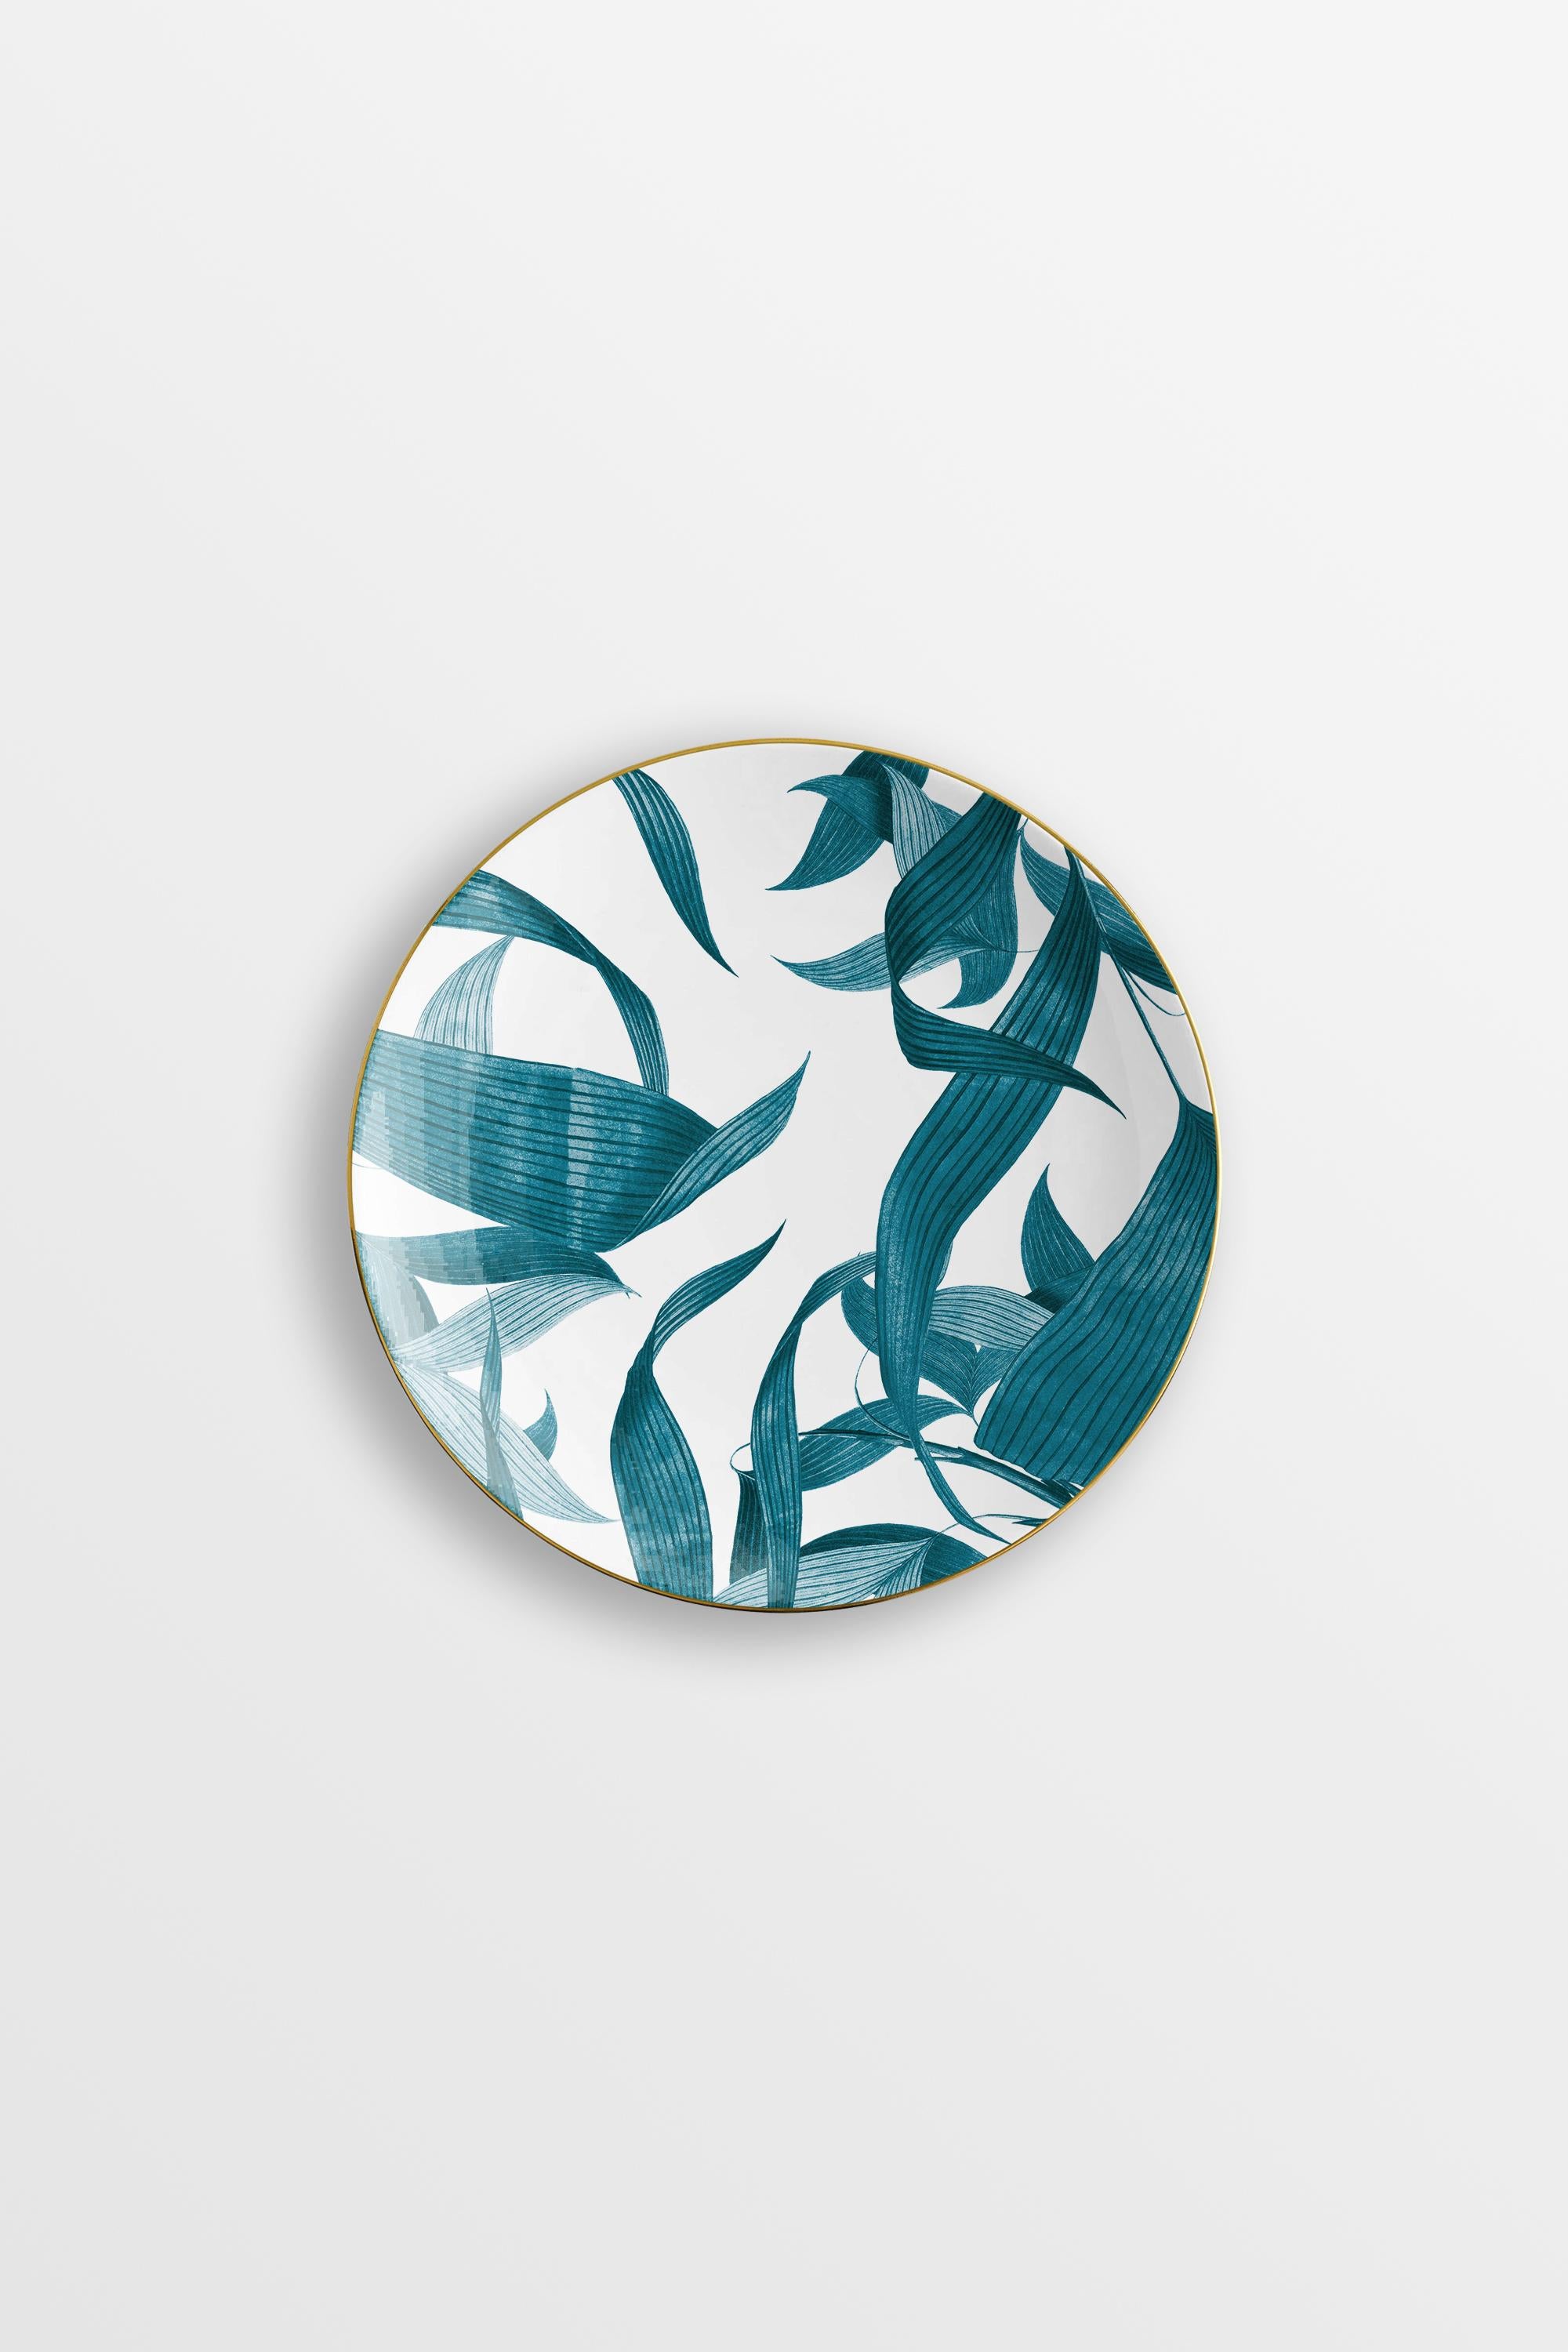 Las Palmas, Six Contemporary Porcelain Bread Plates with Decorative Design For Sale 2